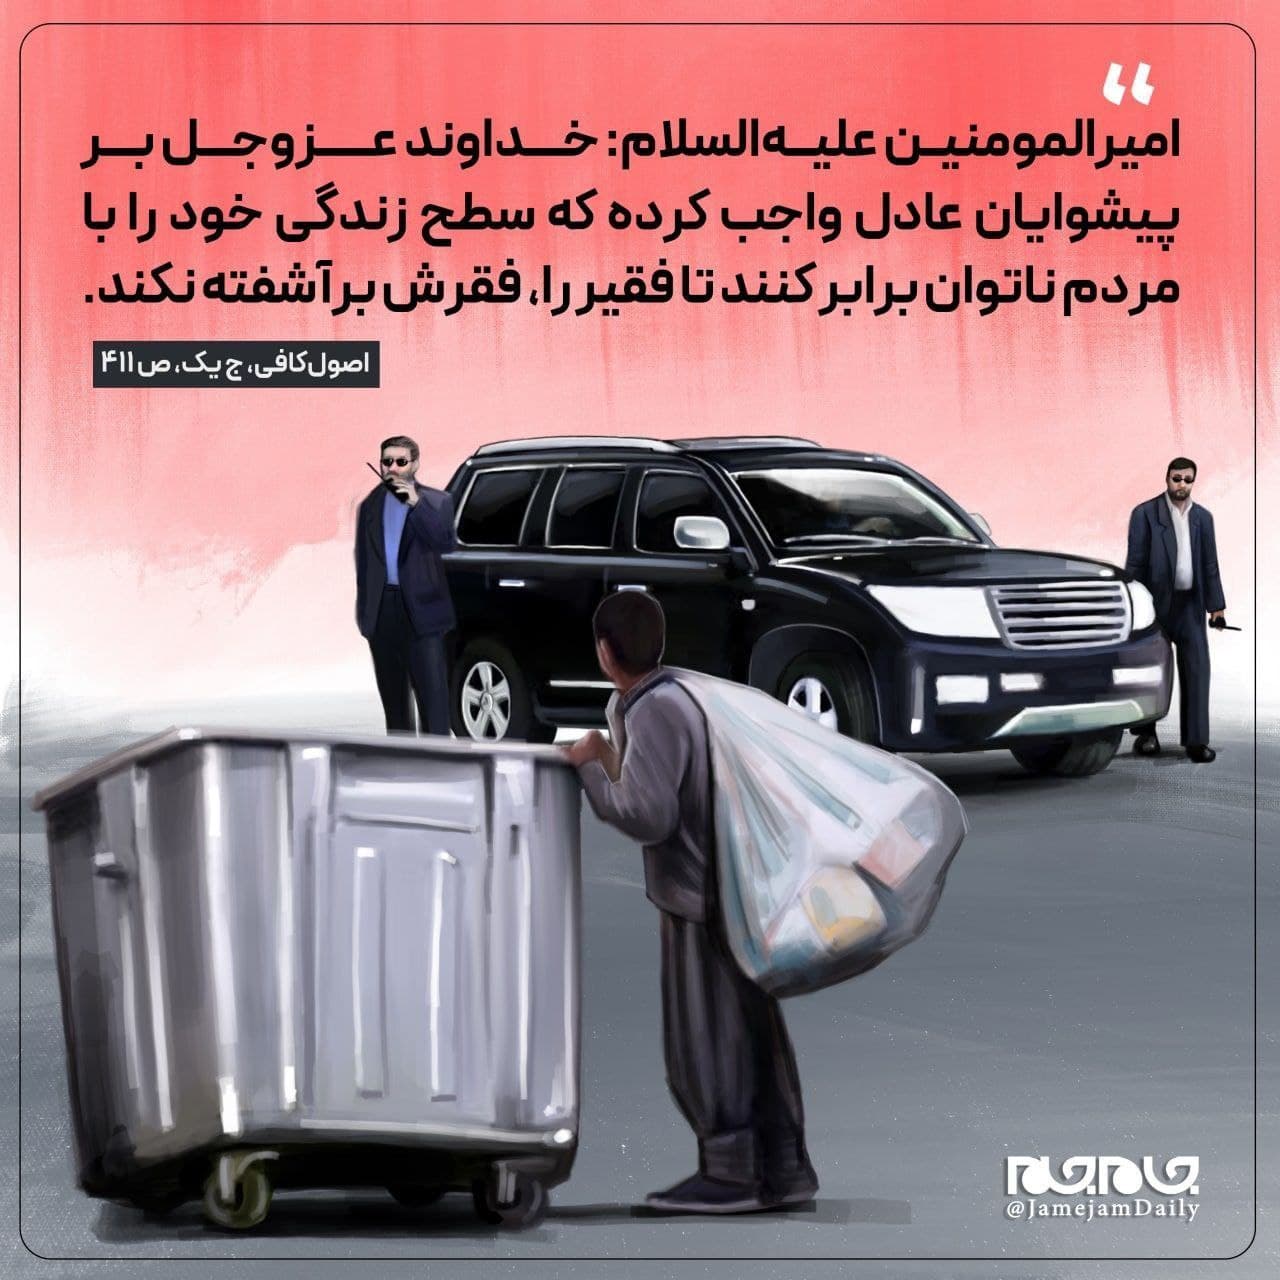 تصویری برای تقدیم به کابینه دولت روحانی